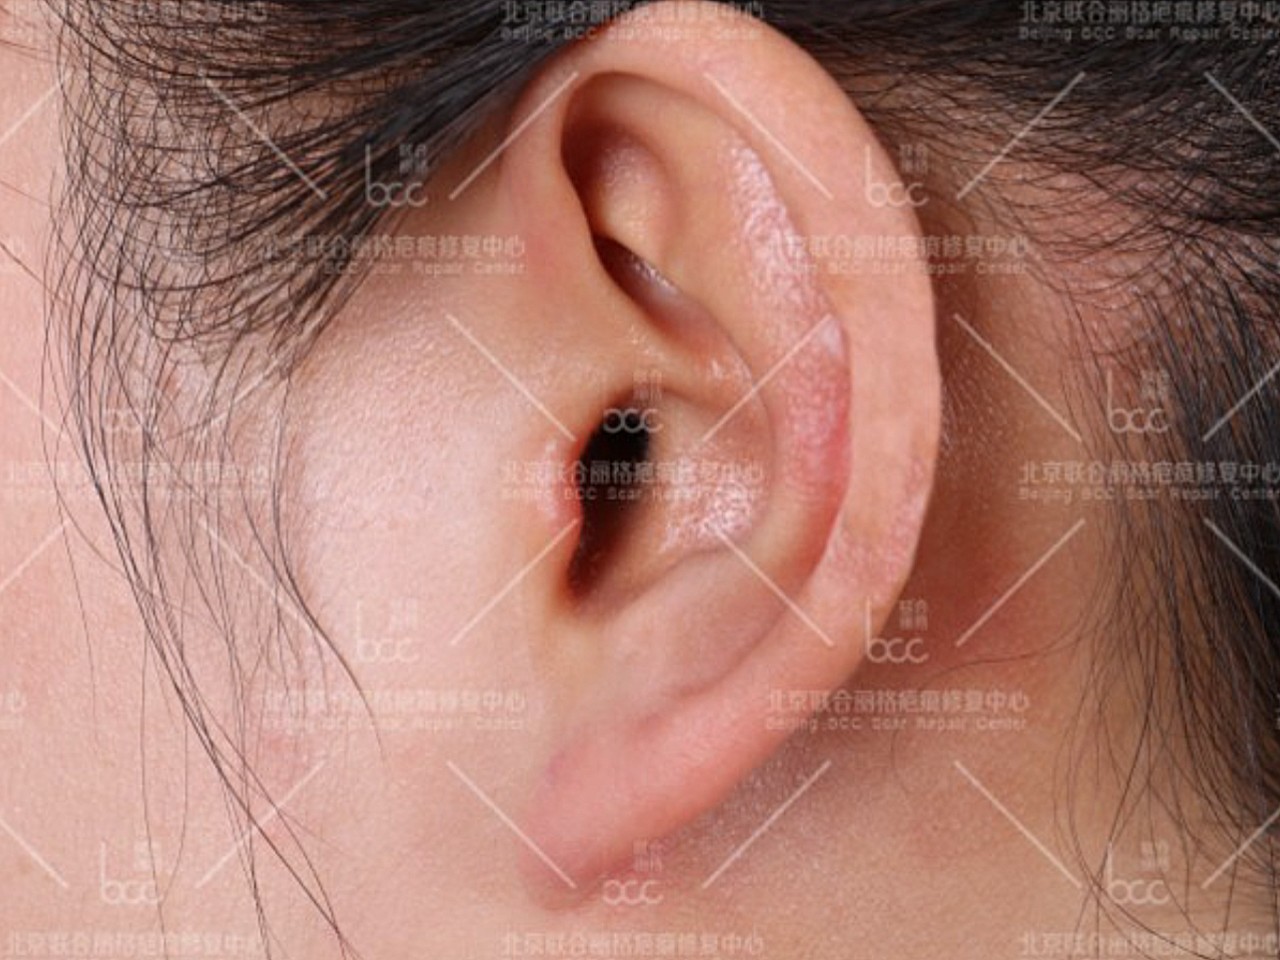 患者因为打耳洞导致疤痕疙瘩,多年后疤痕疙瘩越长越大,皮下有